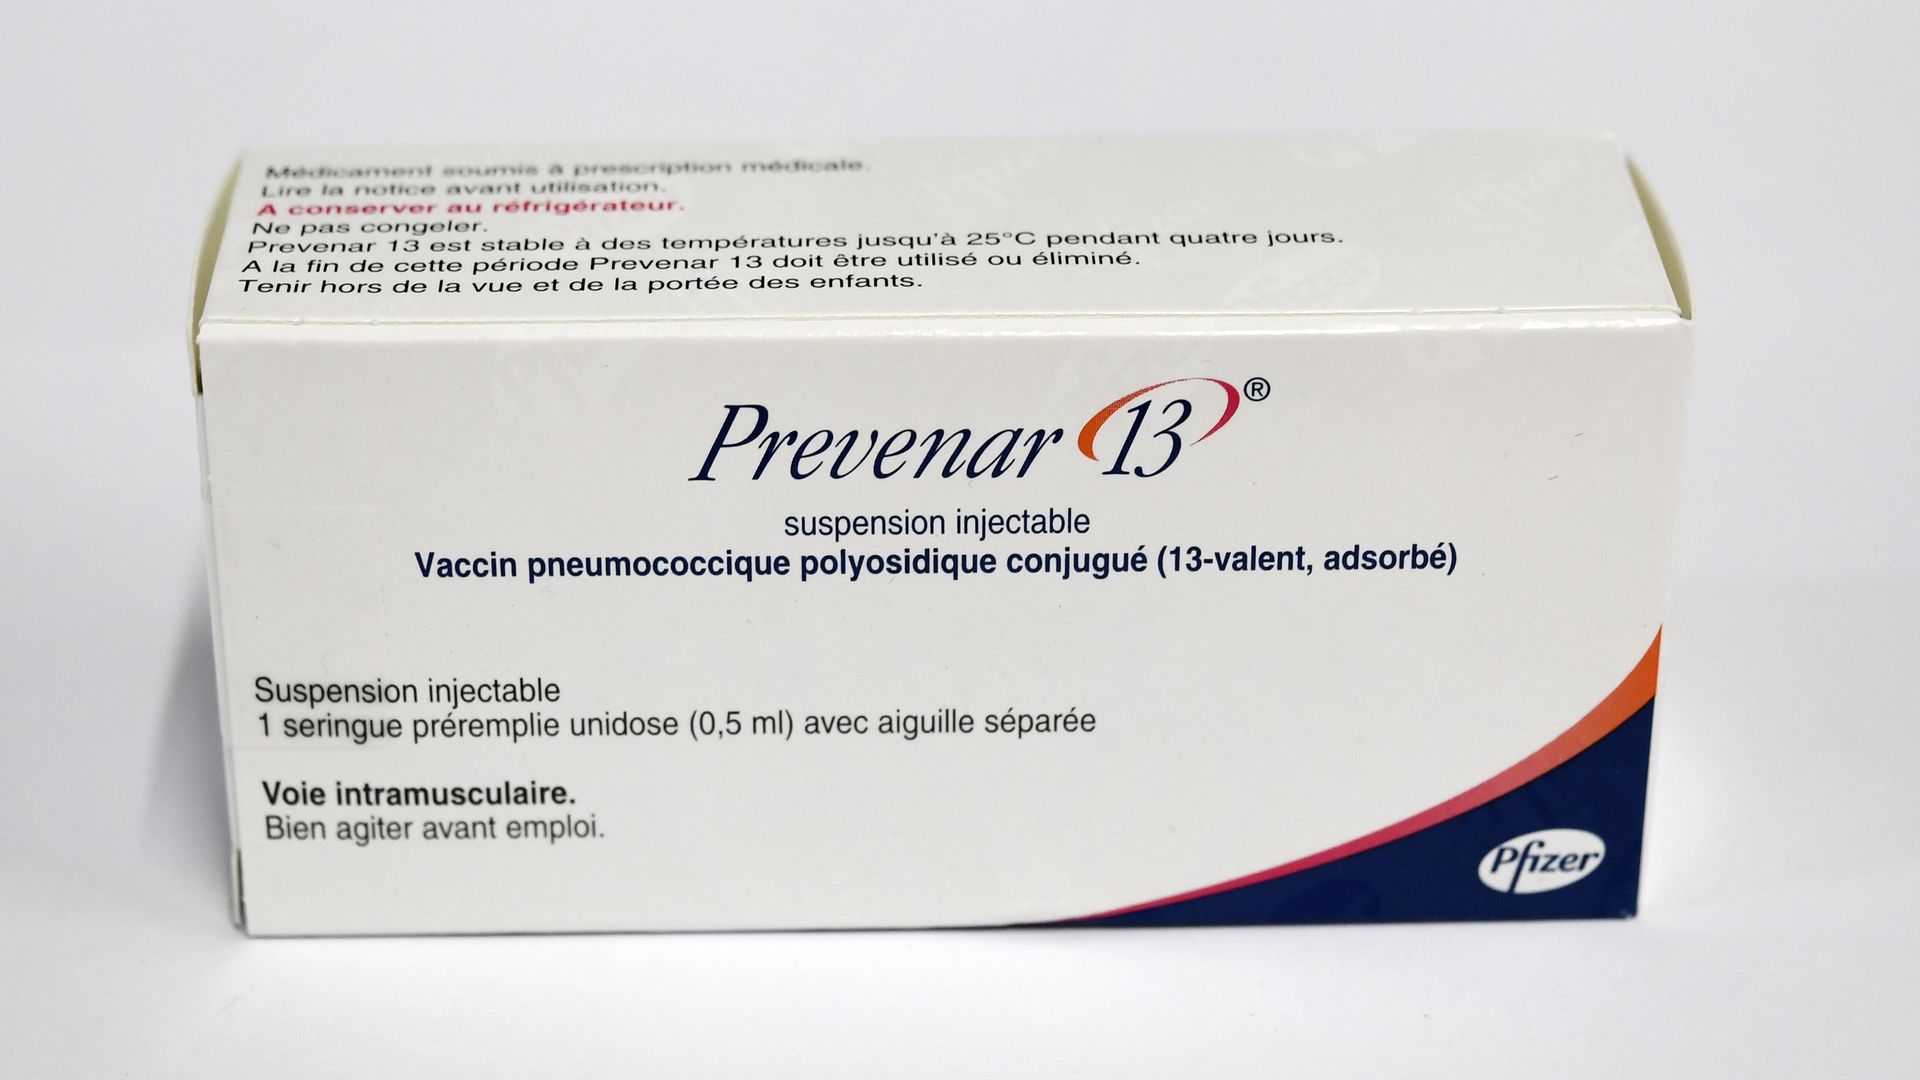 A box of Prevenar 13, a pneumonia vaccine made by Pfizer.